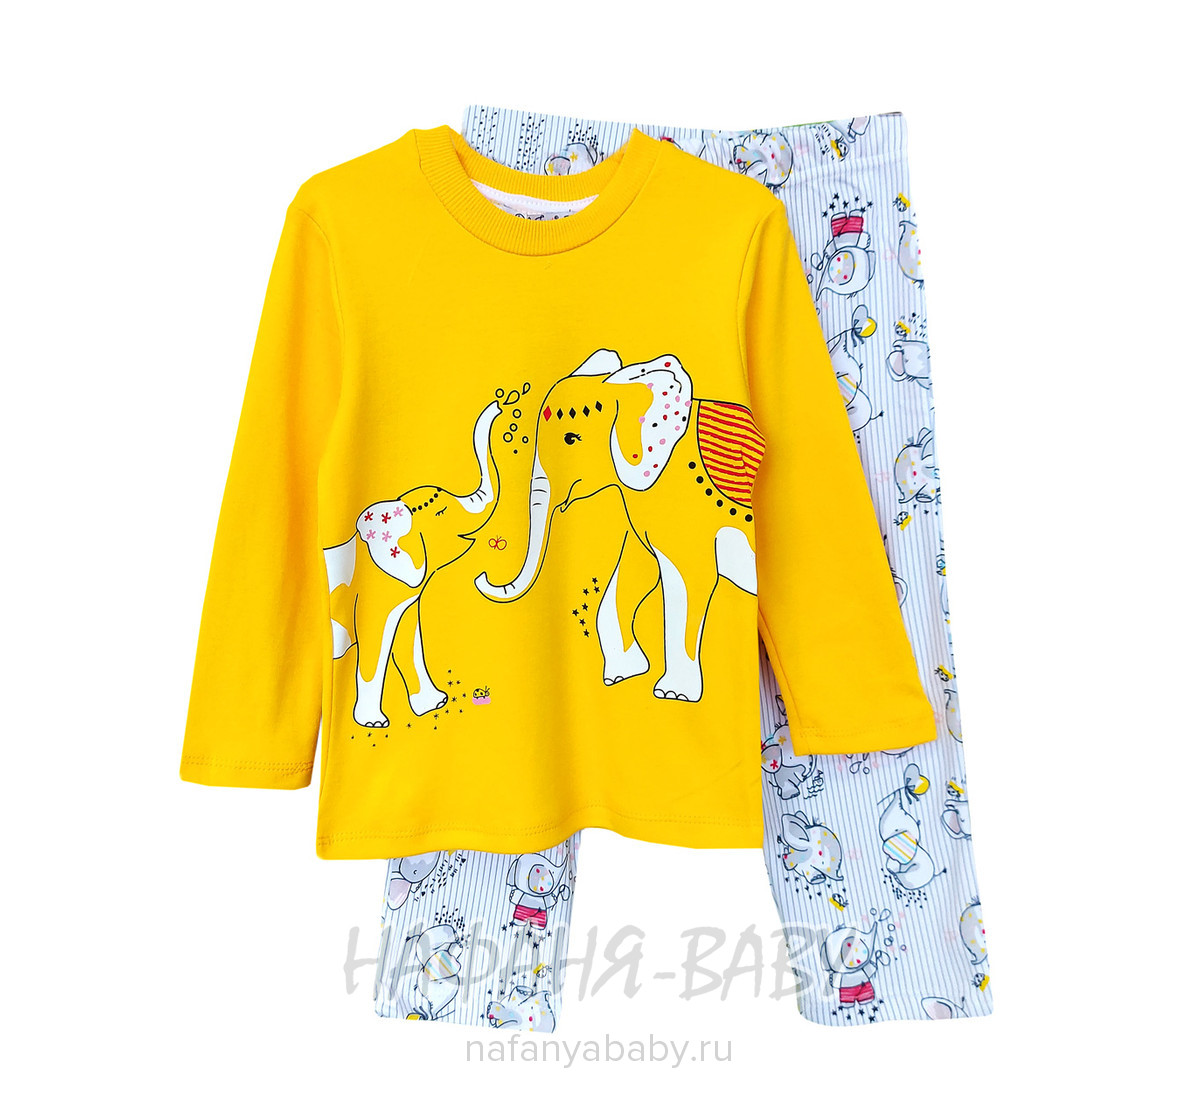 Пижама для девочки СЛОНИКИ POLI FONI арт: 305, 5-9 лет, 1-4 года, цвет желтый, оптом Турция